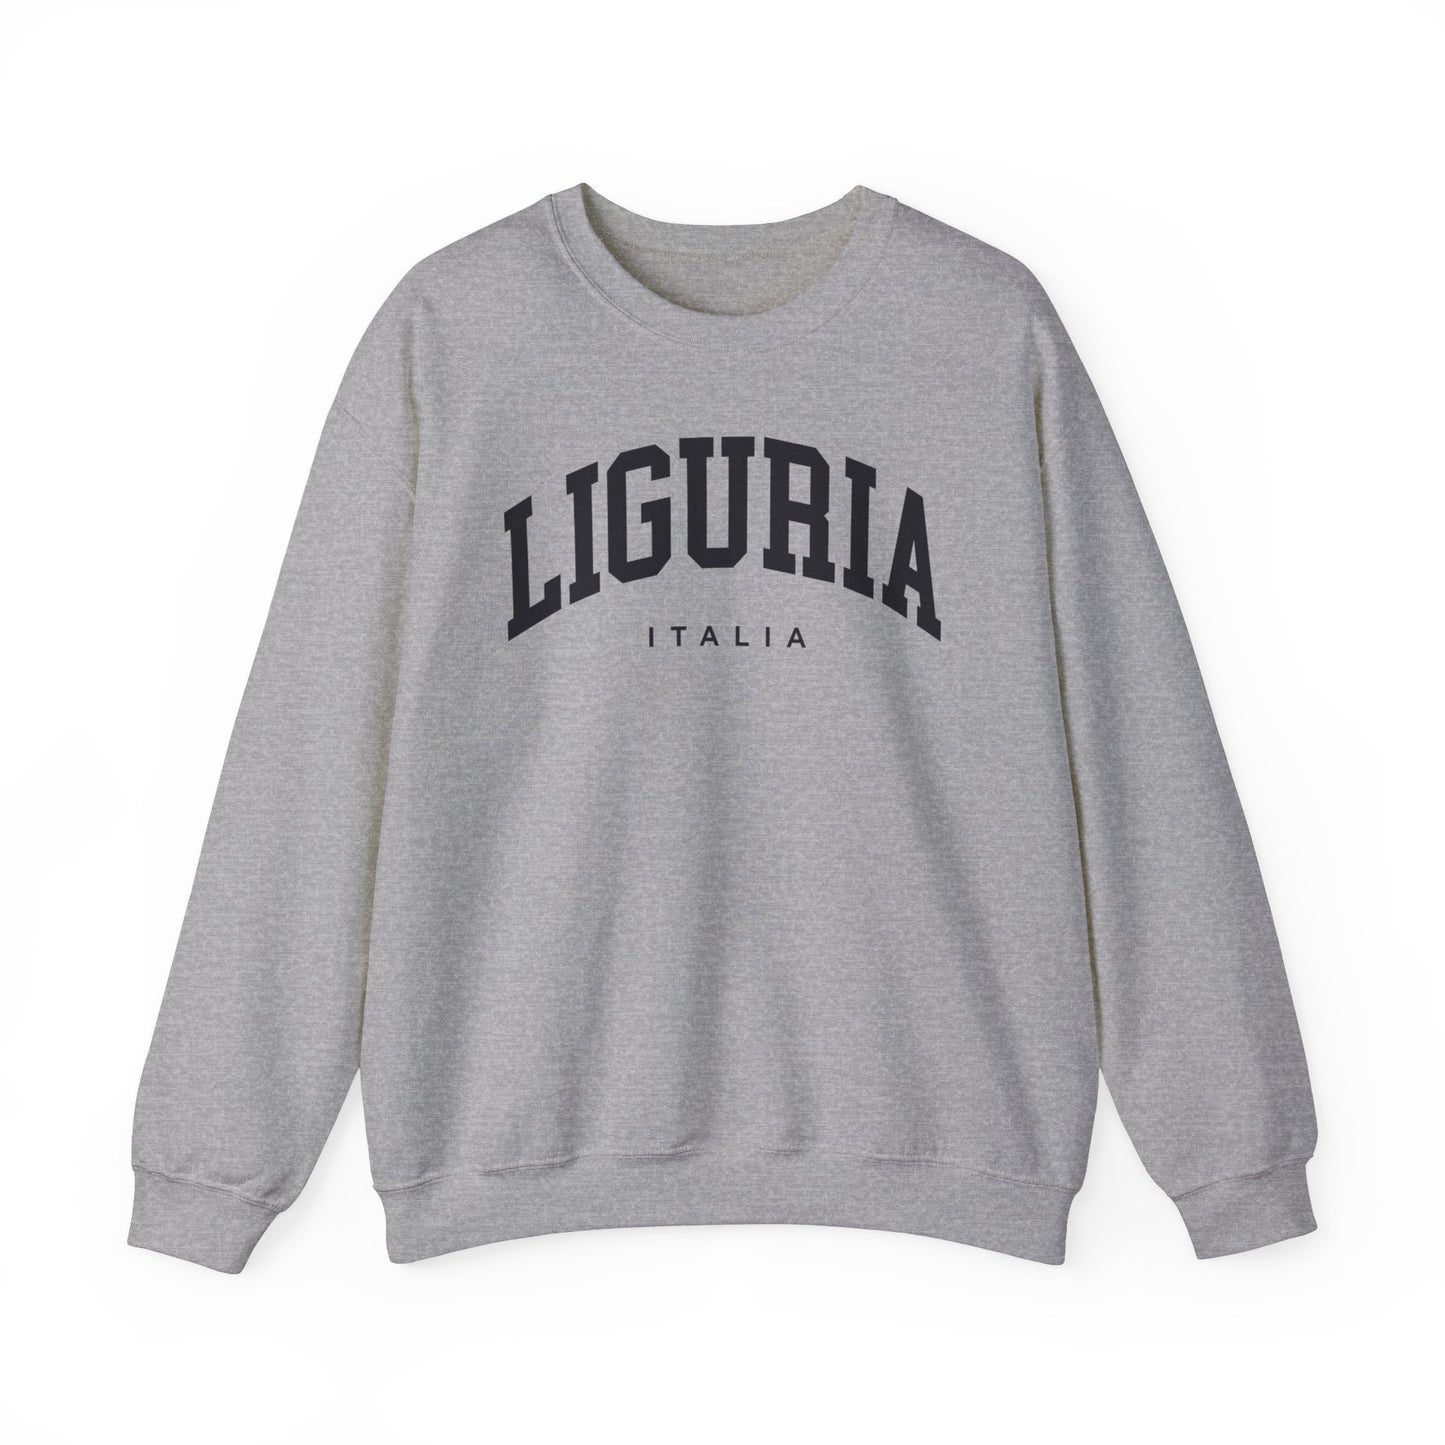 Liguria Italy Sweatshirt